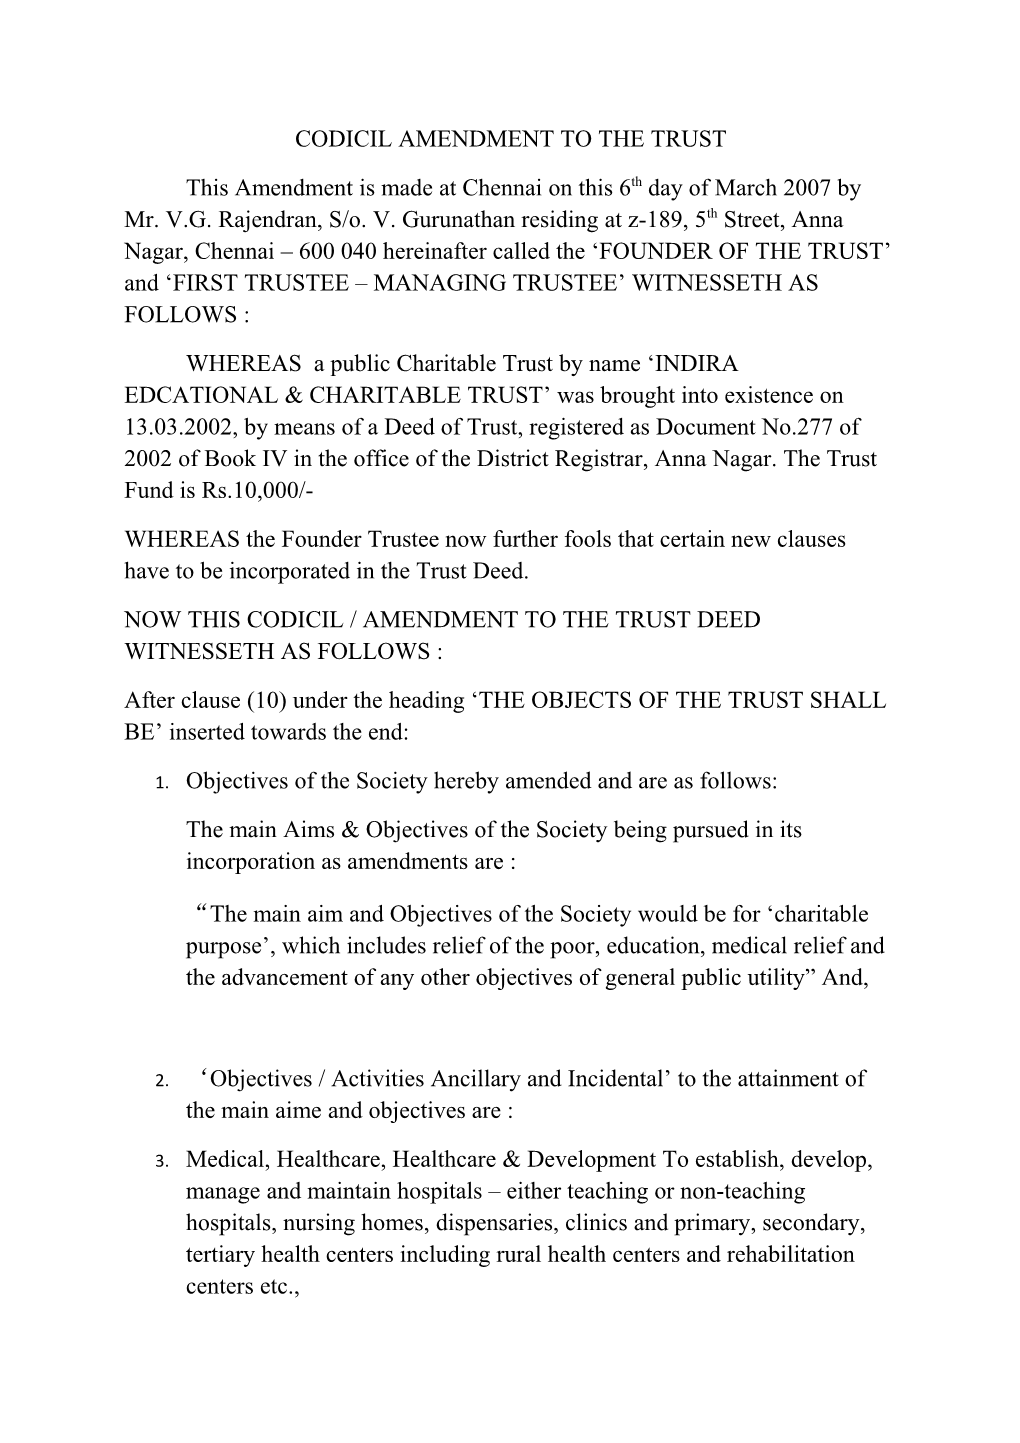 Codicil Amendment to the Trust